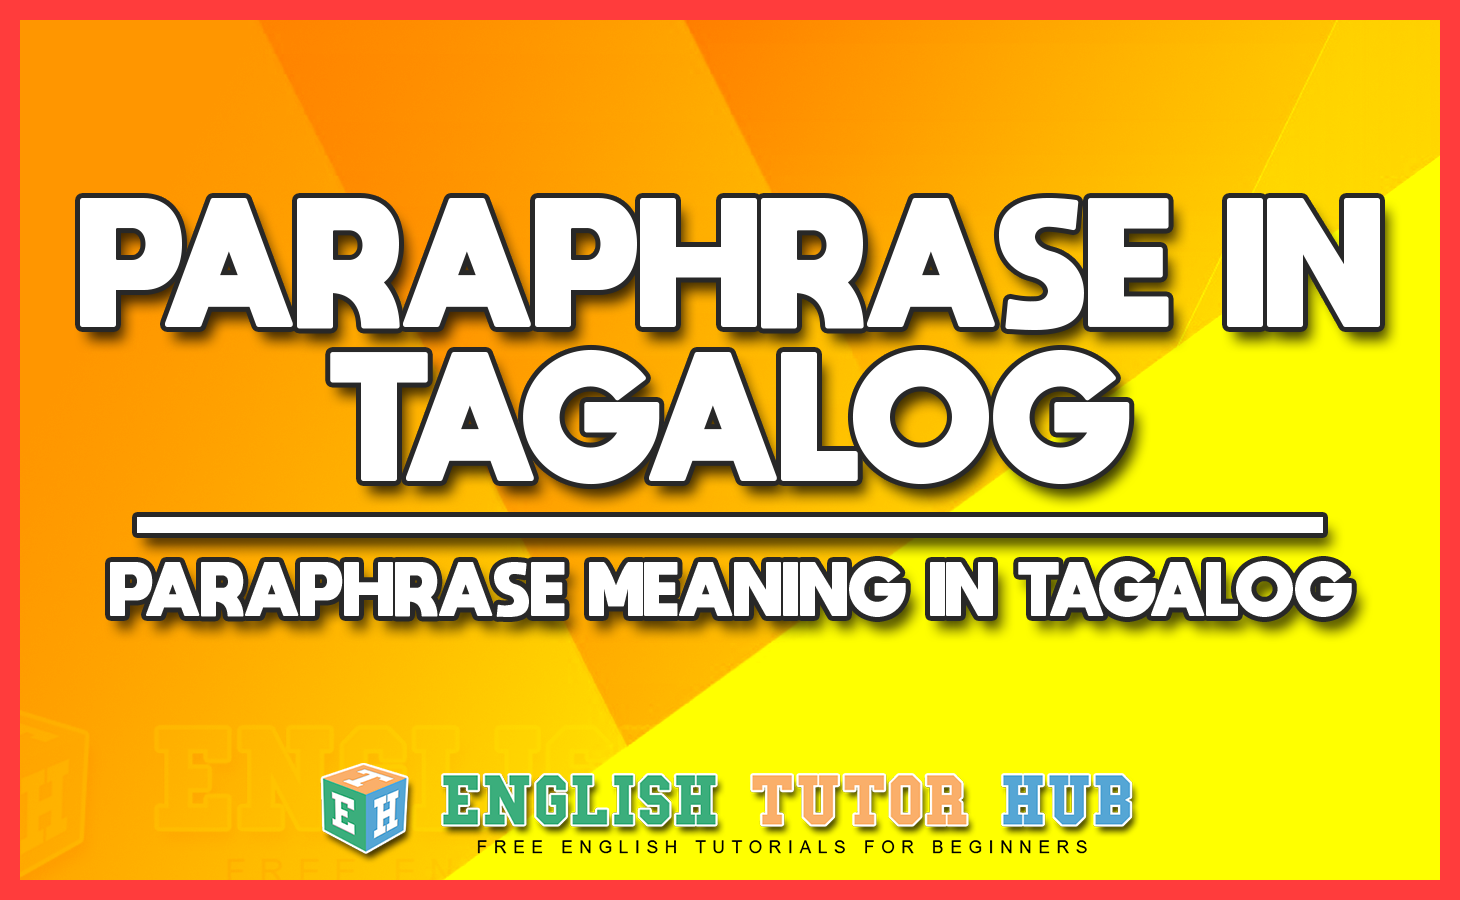 paraphrase online tagalog